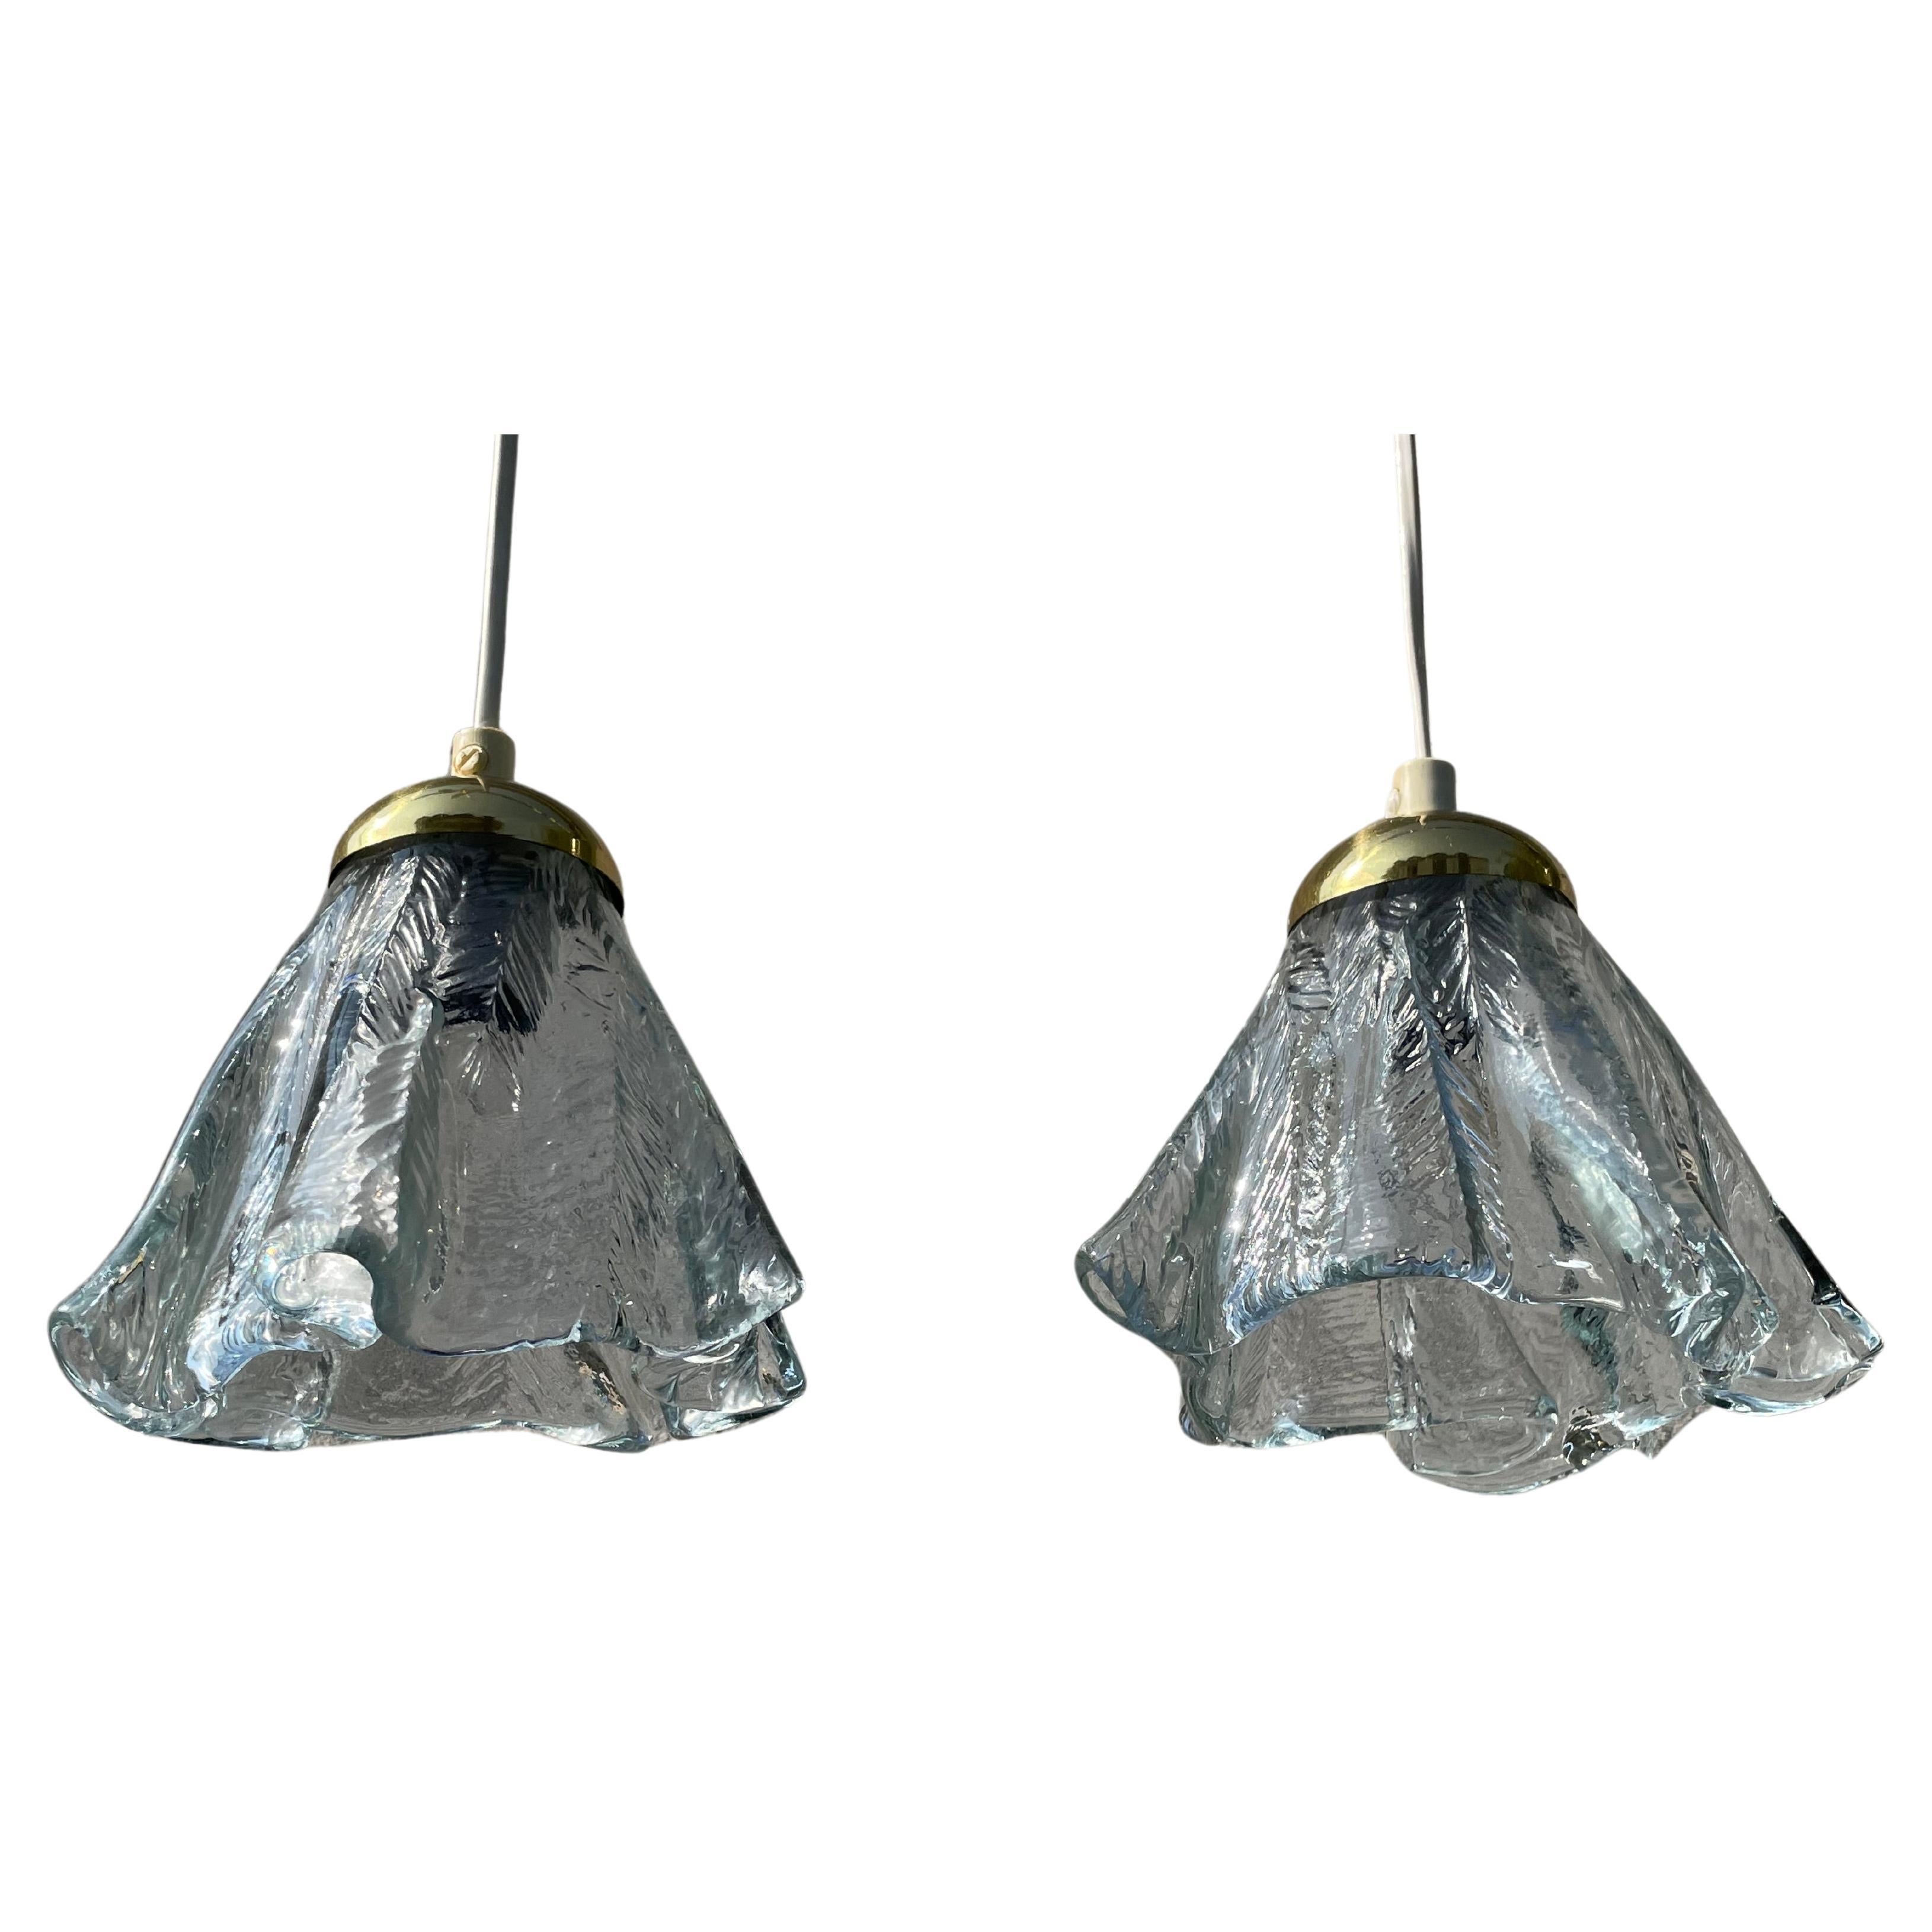 Orrefors Draped Art Glass Pendants on Brass Mount, Sweden, 1960s For Sale